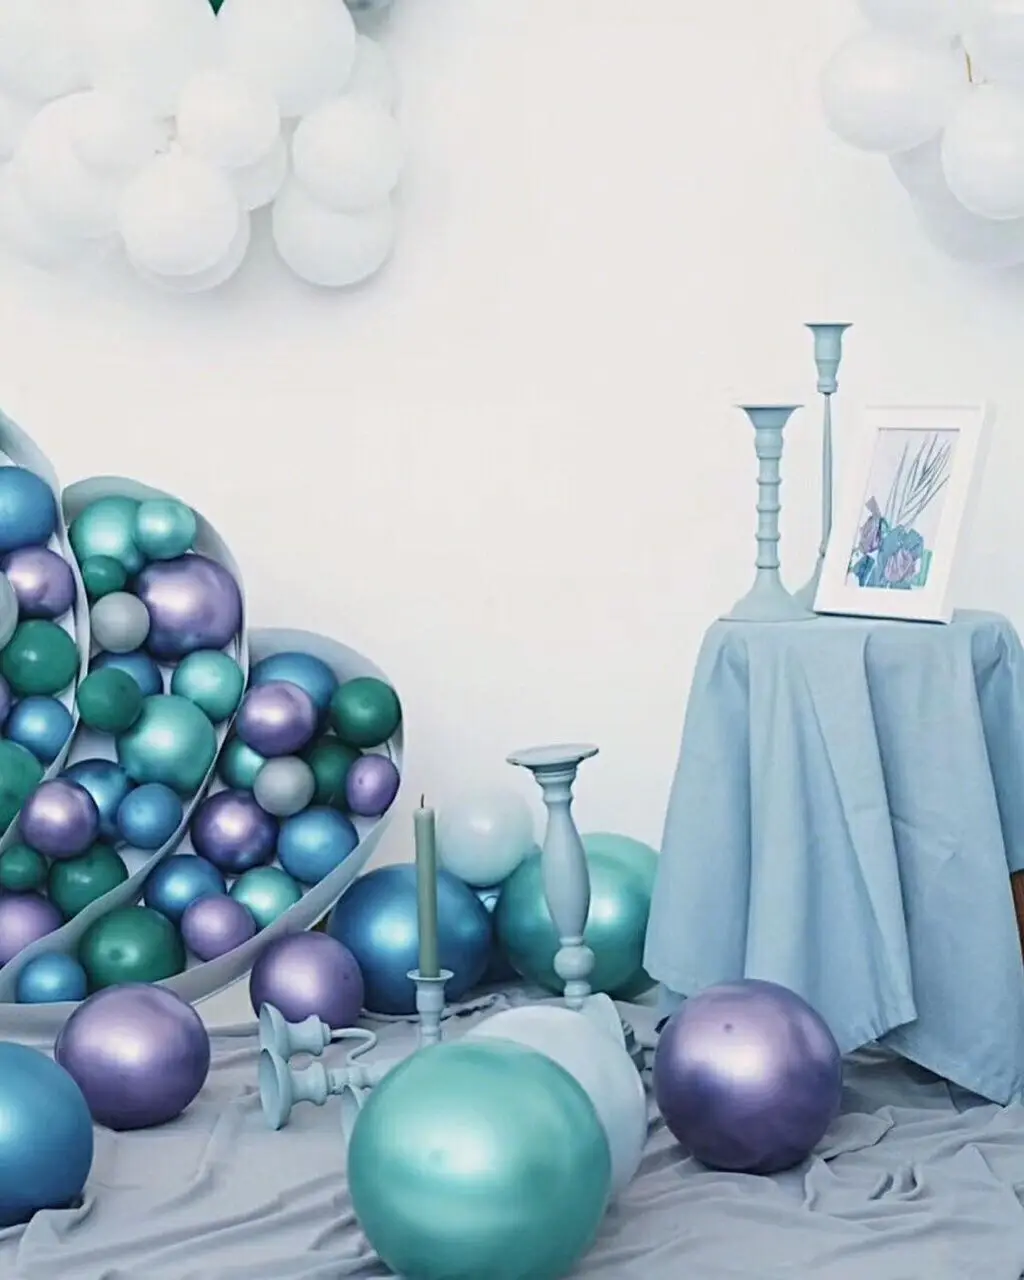 

20 шт./лот 12 дюймов металлические латексные шары разноцветные воздушные шары вечерние аксессуары для дня рождения свадебные Детские реквизи...